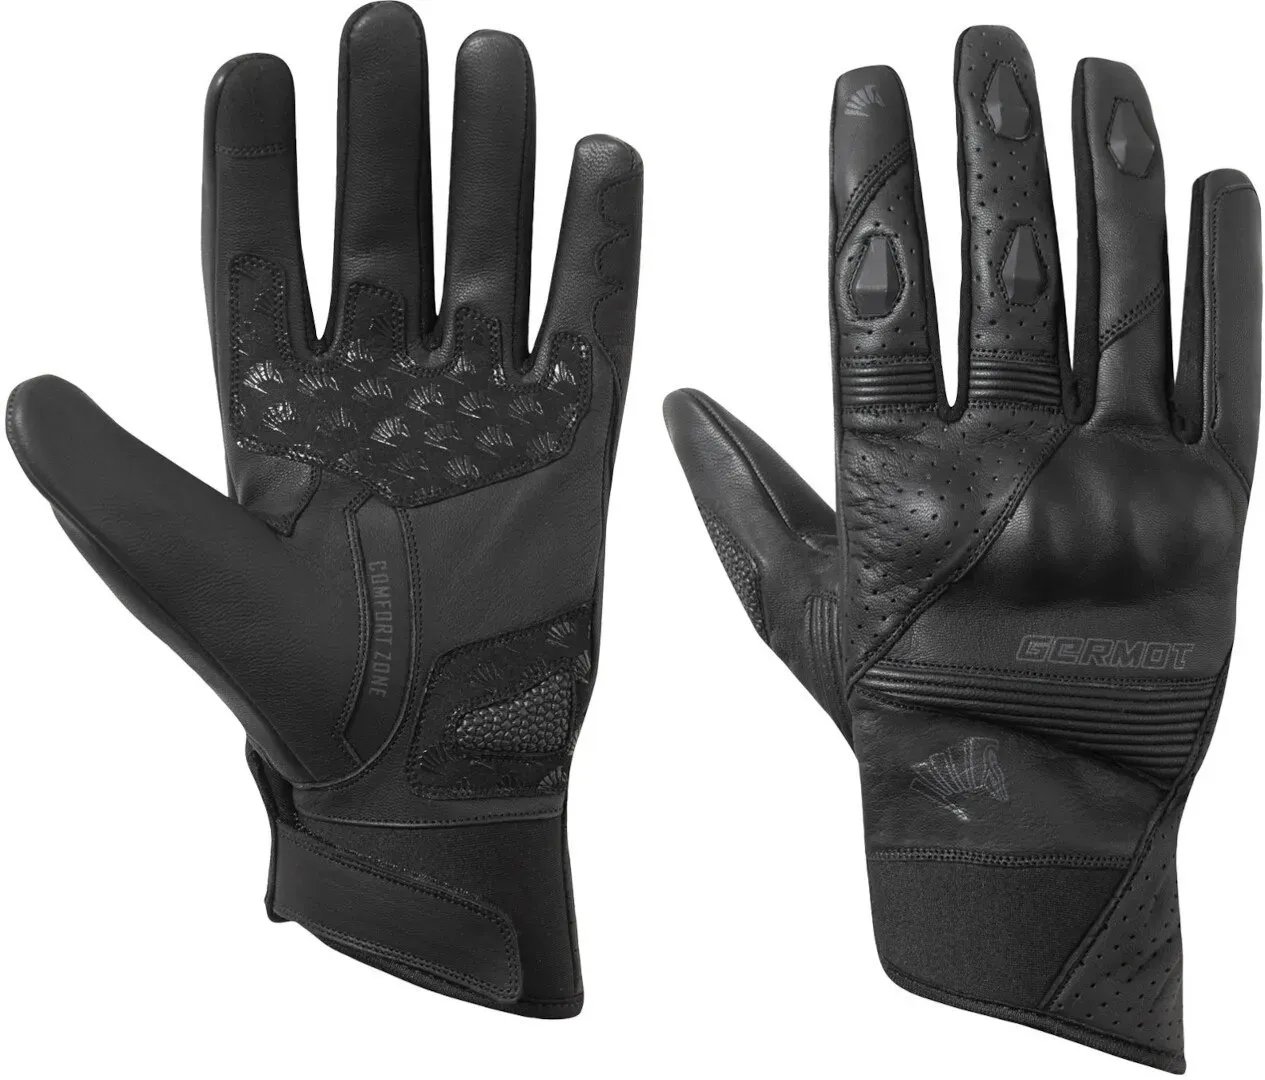 Germot Thompson Motorfiets handschoenen, zwart, 3XL